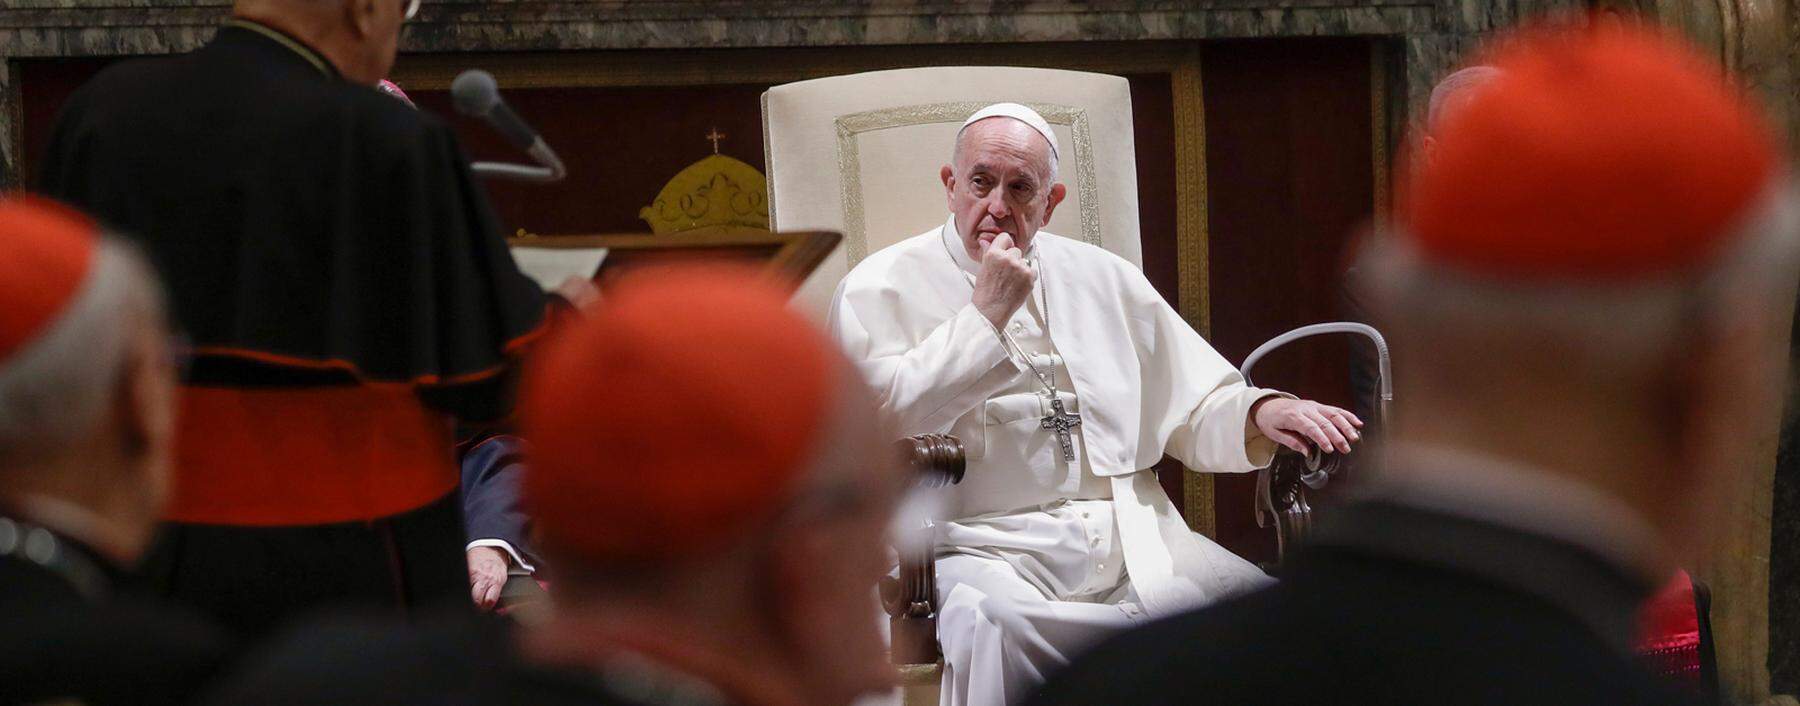 Papst Franziskus nimmt am Samstag im Vatikan die Weihnachtsgrüße der römischen Kurie durch Kardinal Angelo Sodano (l.) entgegen.